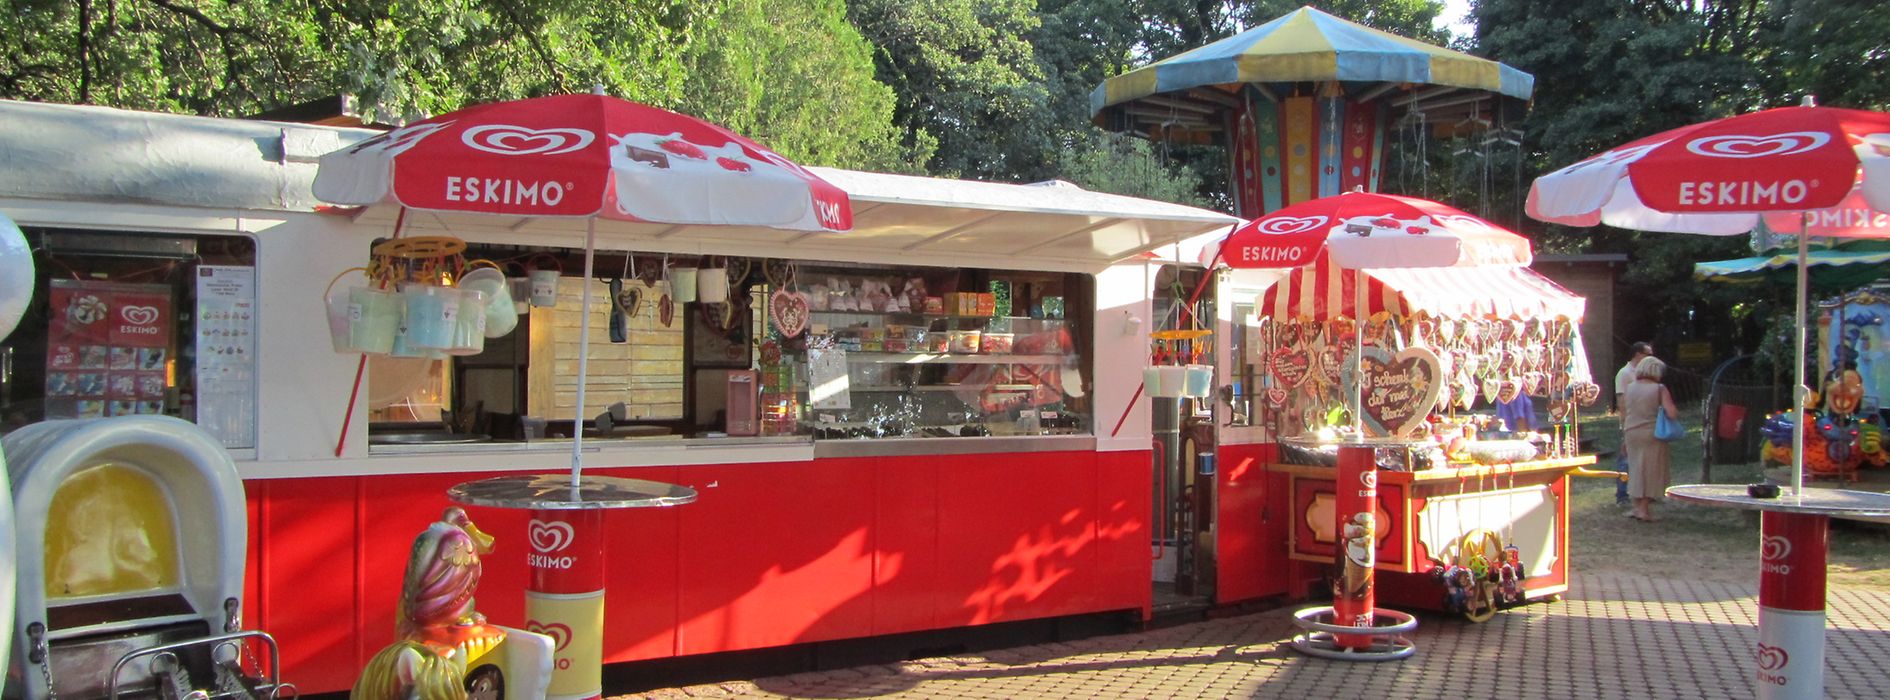 Die Süße Tram im Böhmischen Prater, ein Straßenbahnwaggon, aus dem Süßigkeiten verkauft werden